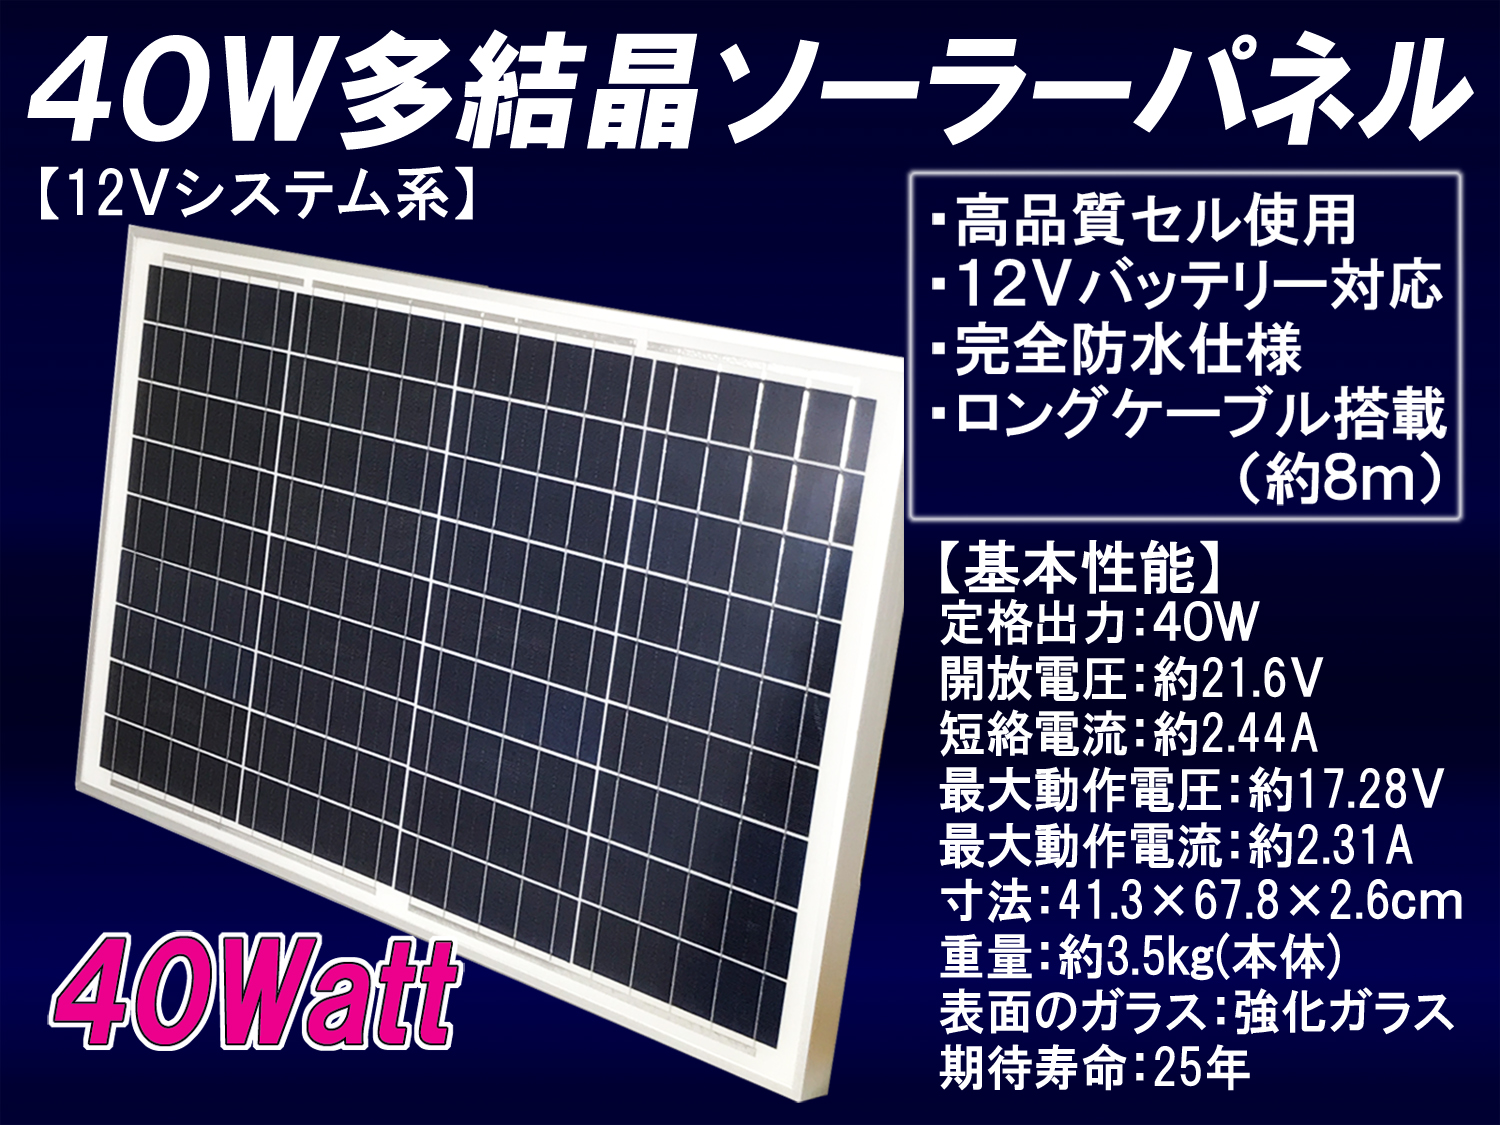 特価ソーラー発電セット y-solar 40W + SABA10